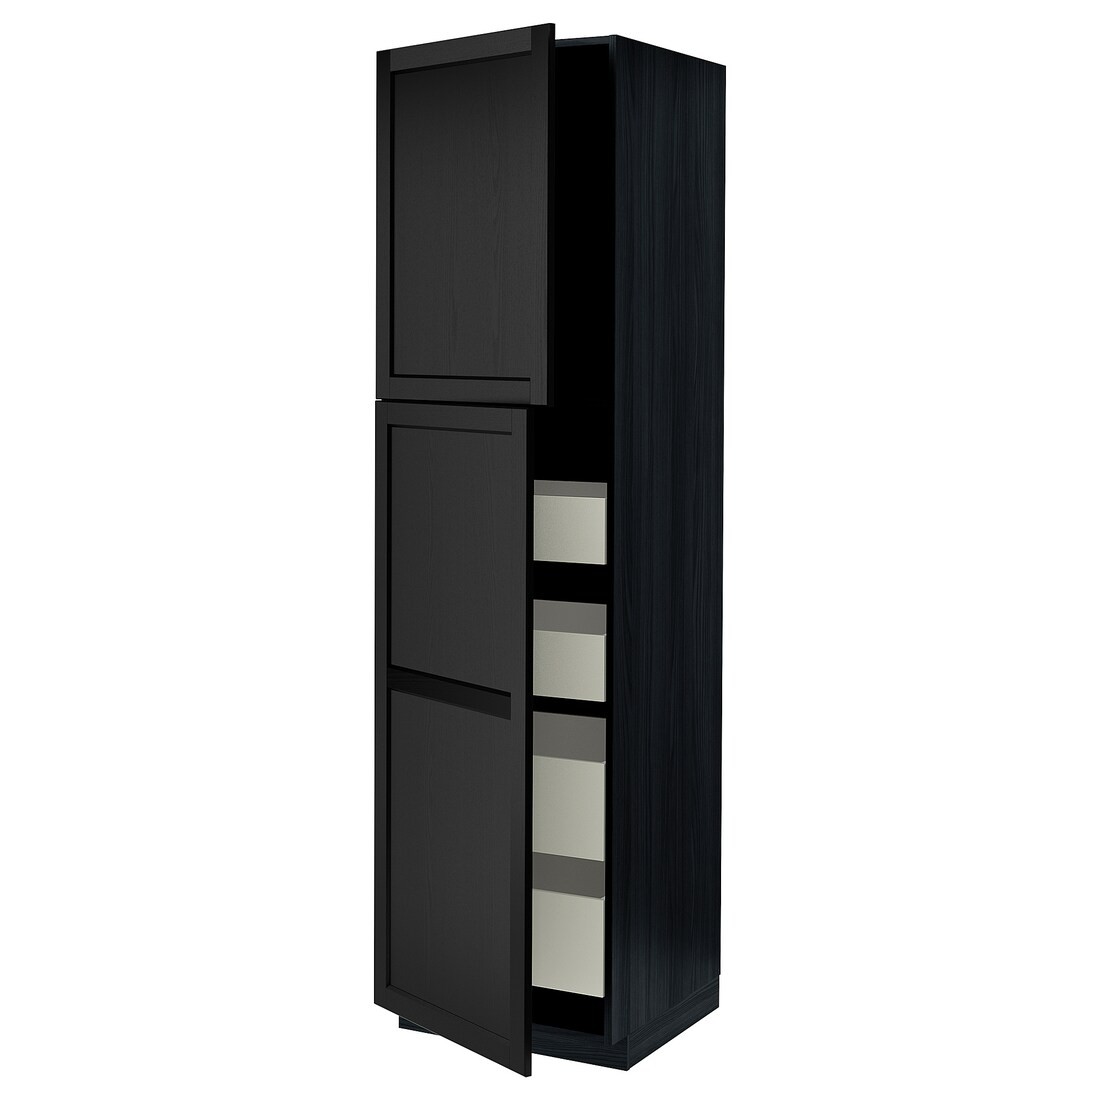 IKEA METOD МЕТОД / MAXIMERA МАКСИМЕРА Шкаф высокий 2 двери / 4 ящика, черный / Lerhyttan черная морилка, 60x60x220 см 59459567 594.595.67